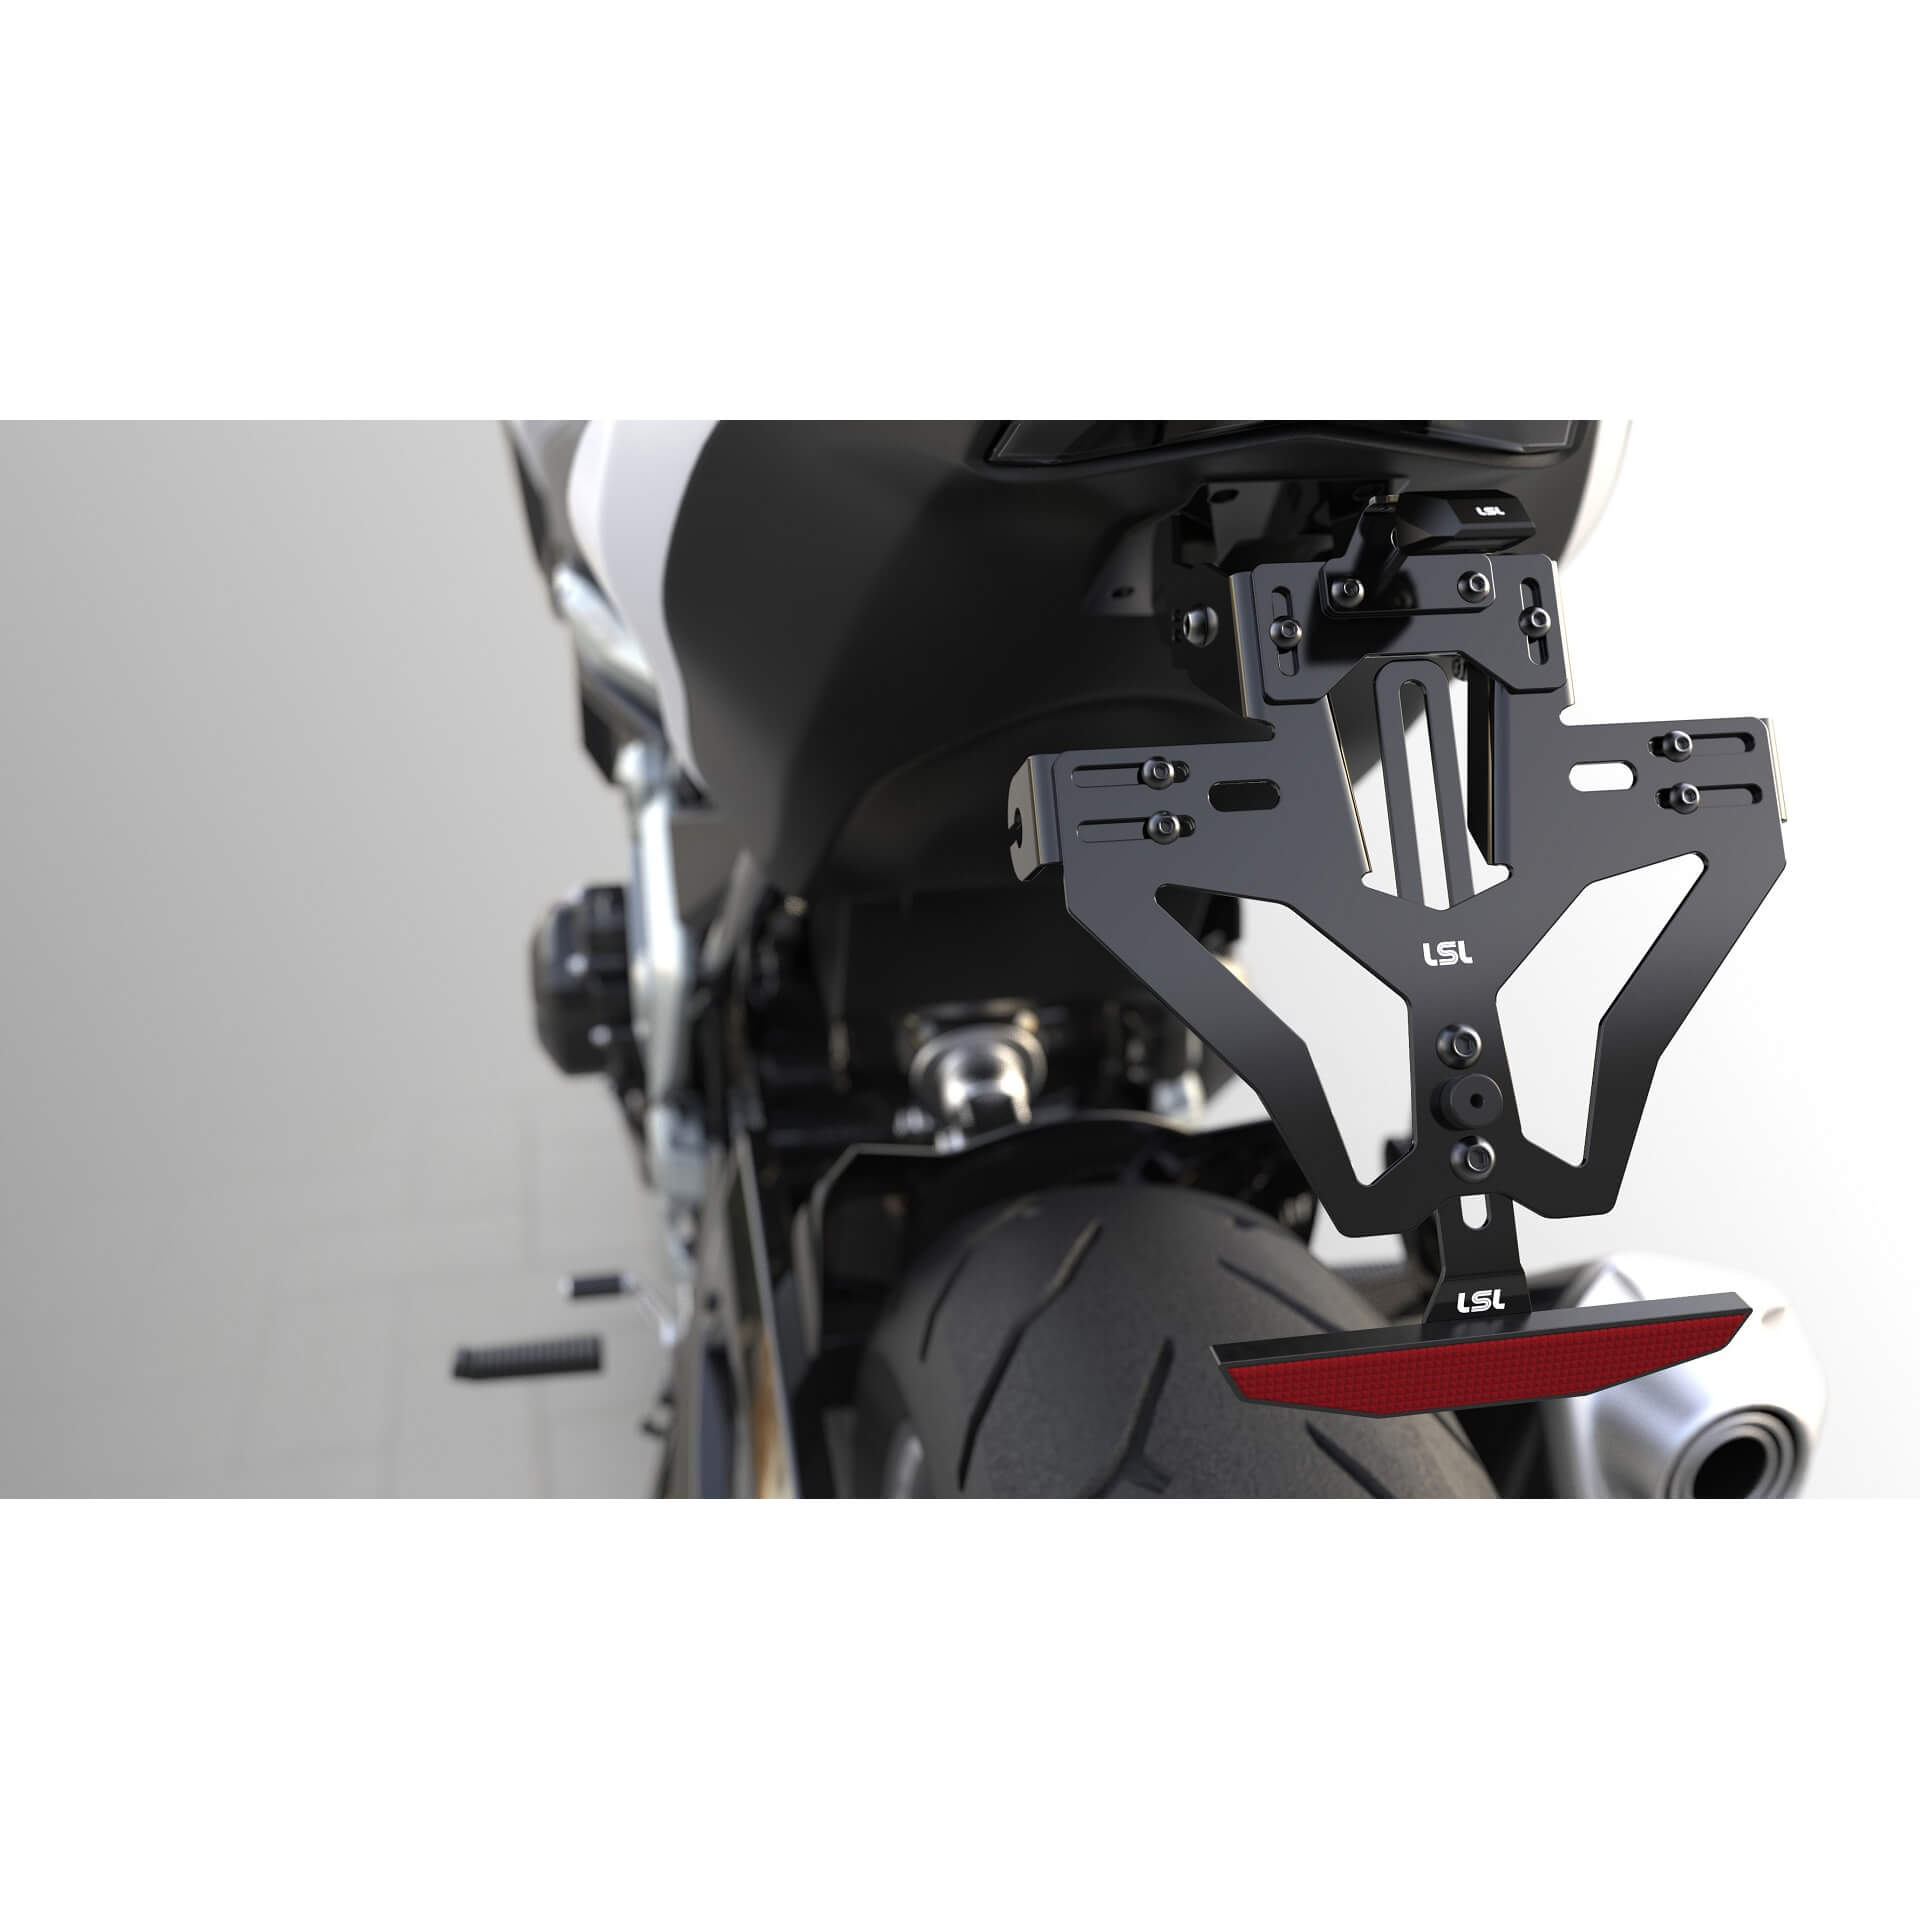 lsl MANTIS-RS PRO für KTM 125 Duke/ 390 Duke, inkl. Kennzeichenbeleuchtung